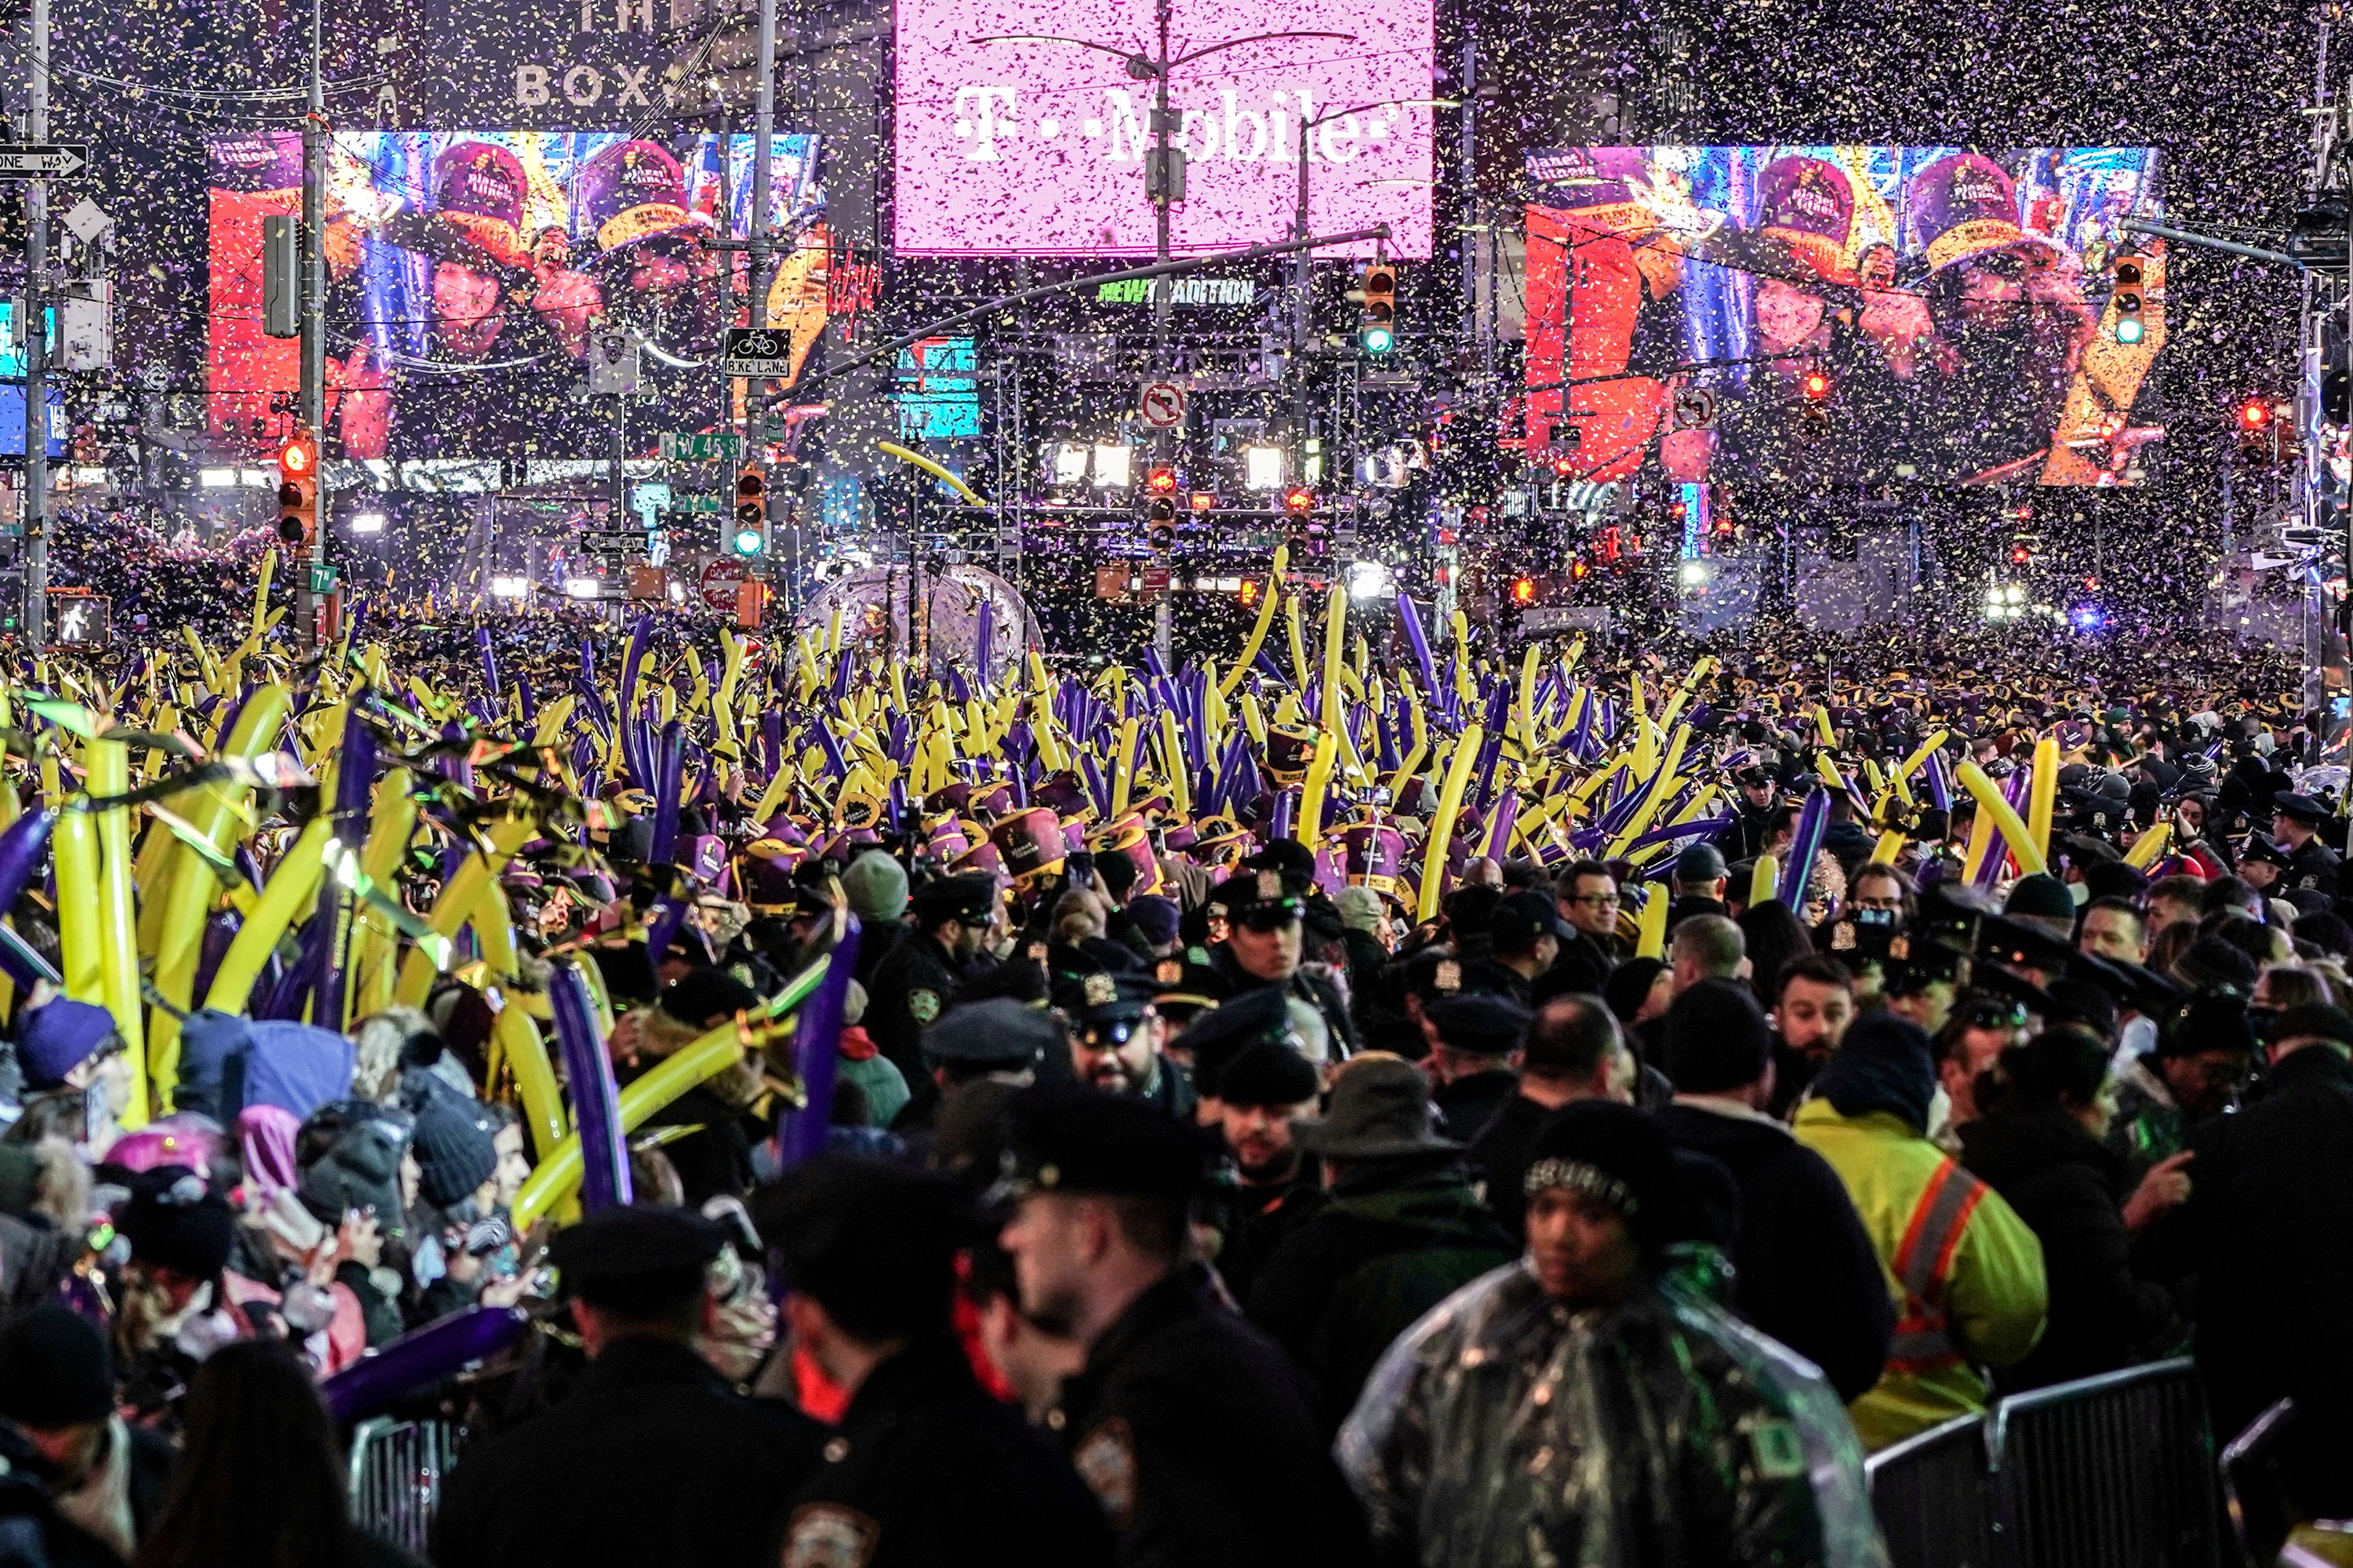 FOTO DE ARCHIVO: Celebraciones de Año Nuevo en Times Square, en el barrio de Manhattan de la ciudad de Nueva York, Estados Unidos, el 31 de diciembre de 2019.REUTERS/Jeenah Moon